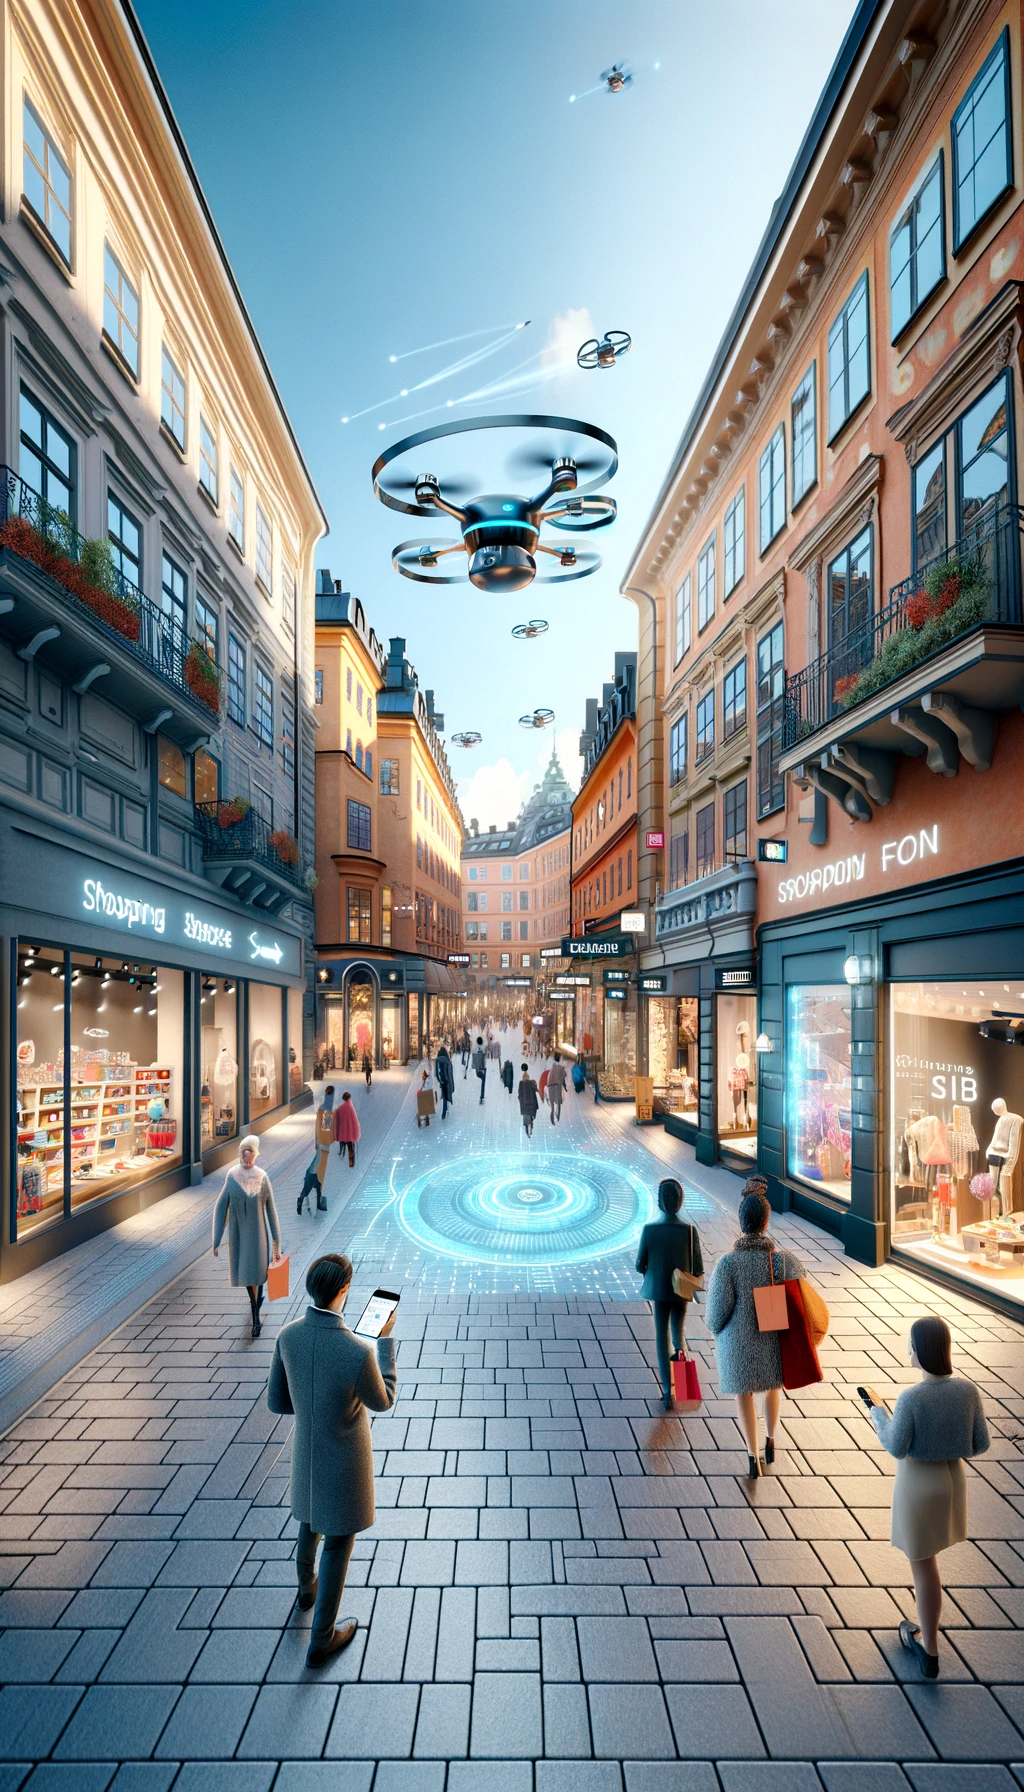 DALL·E 2023-12-21 17.07.32 - En modern, livlig shoppinggata i Sverige, med en futuristisk twist för att illustrera temat e-handel och användningen av AI bland företag i Sverige.